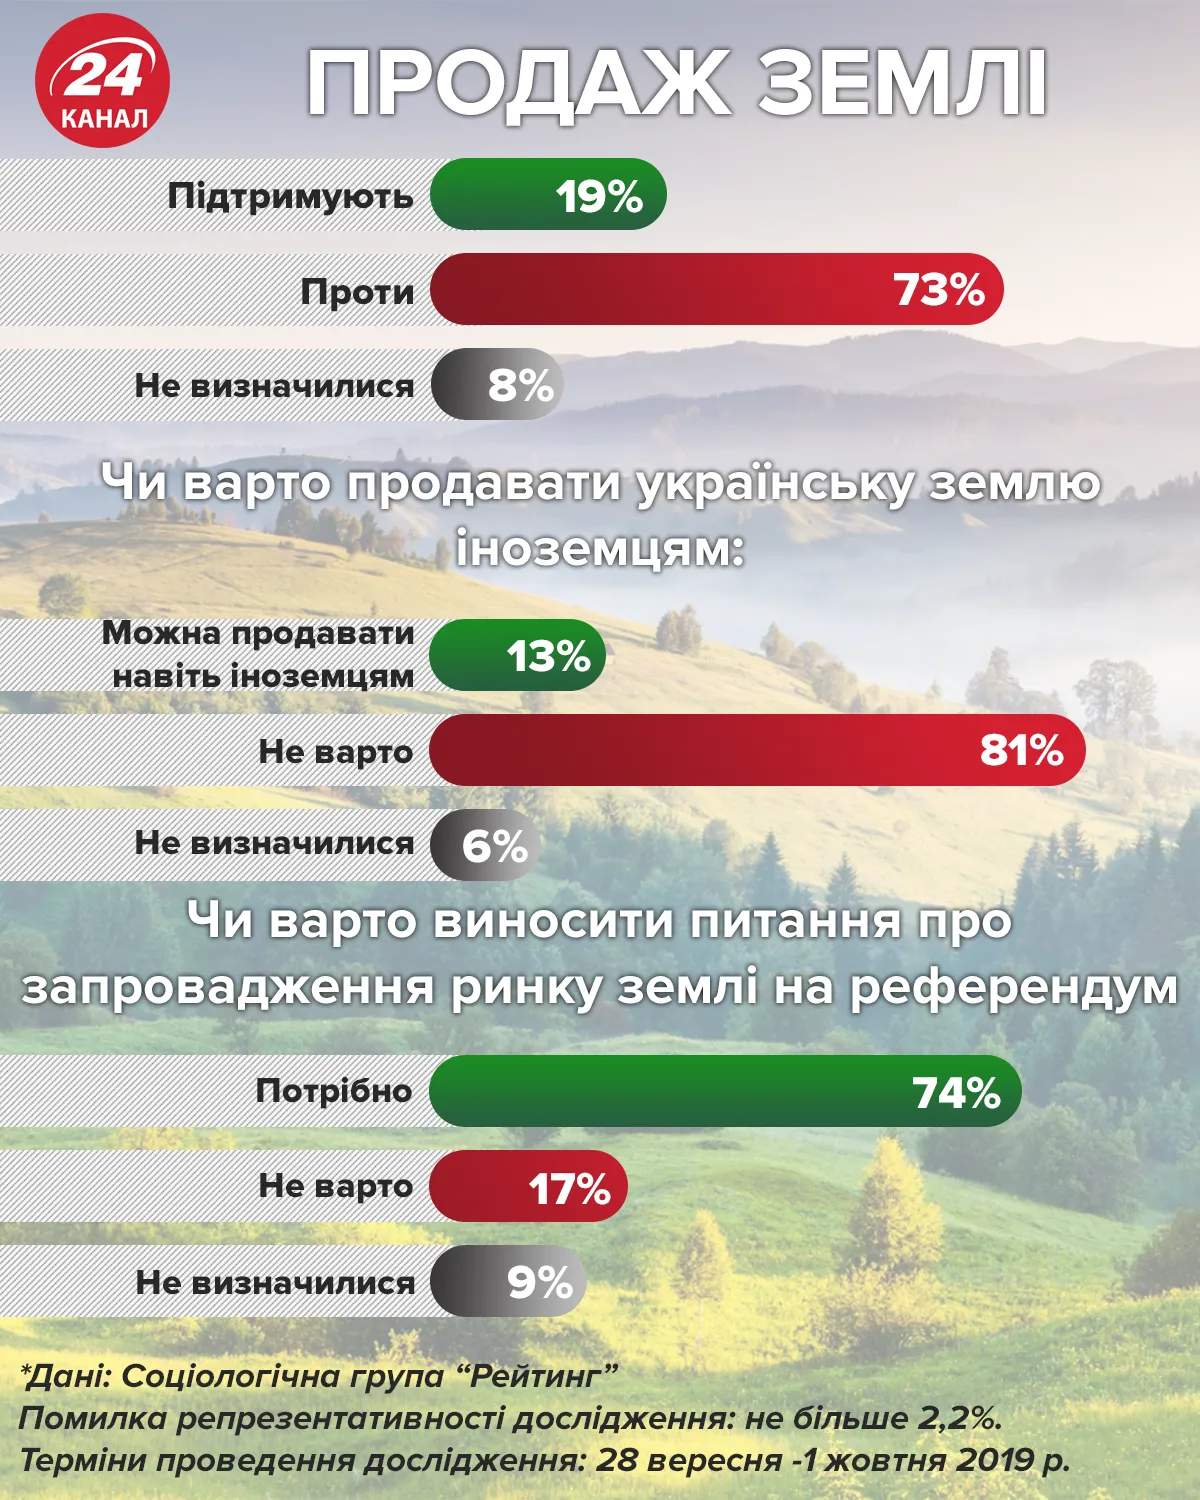 відкриття ринку землі ставлення українців статистика опиутвання